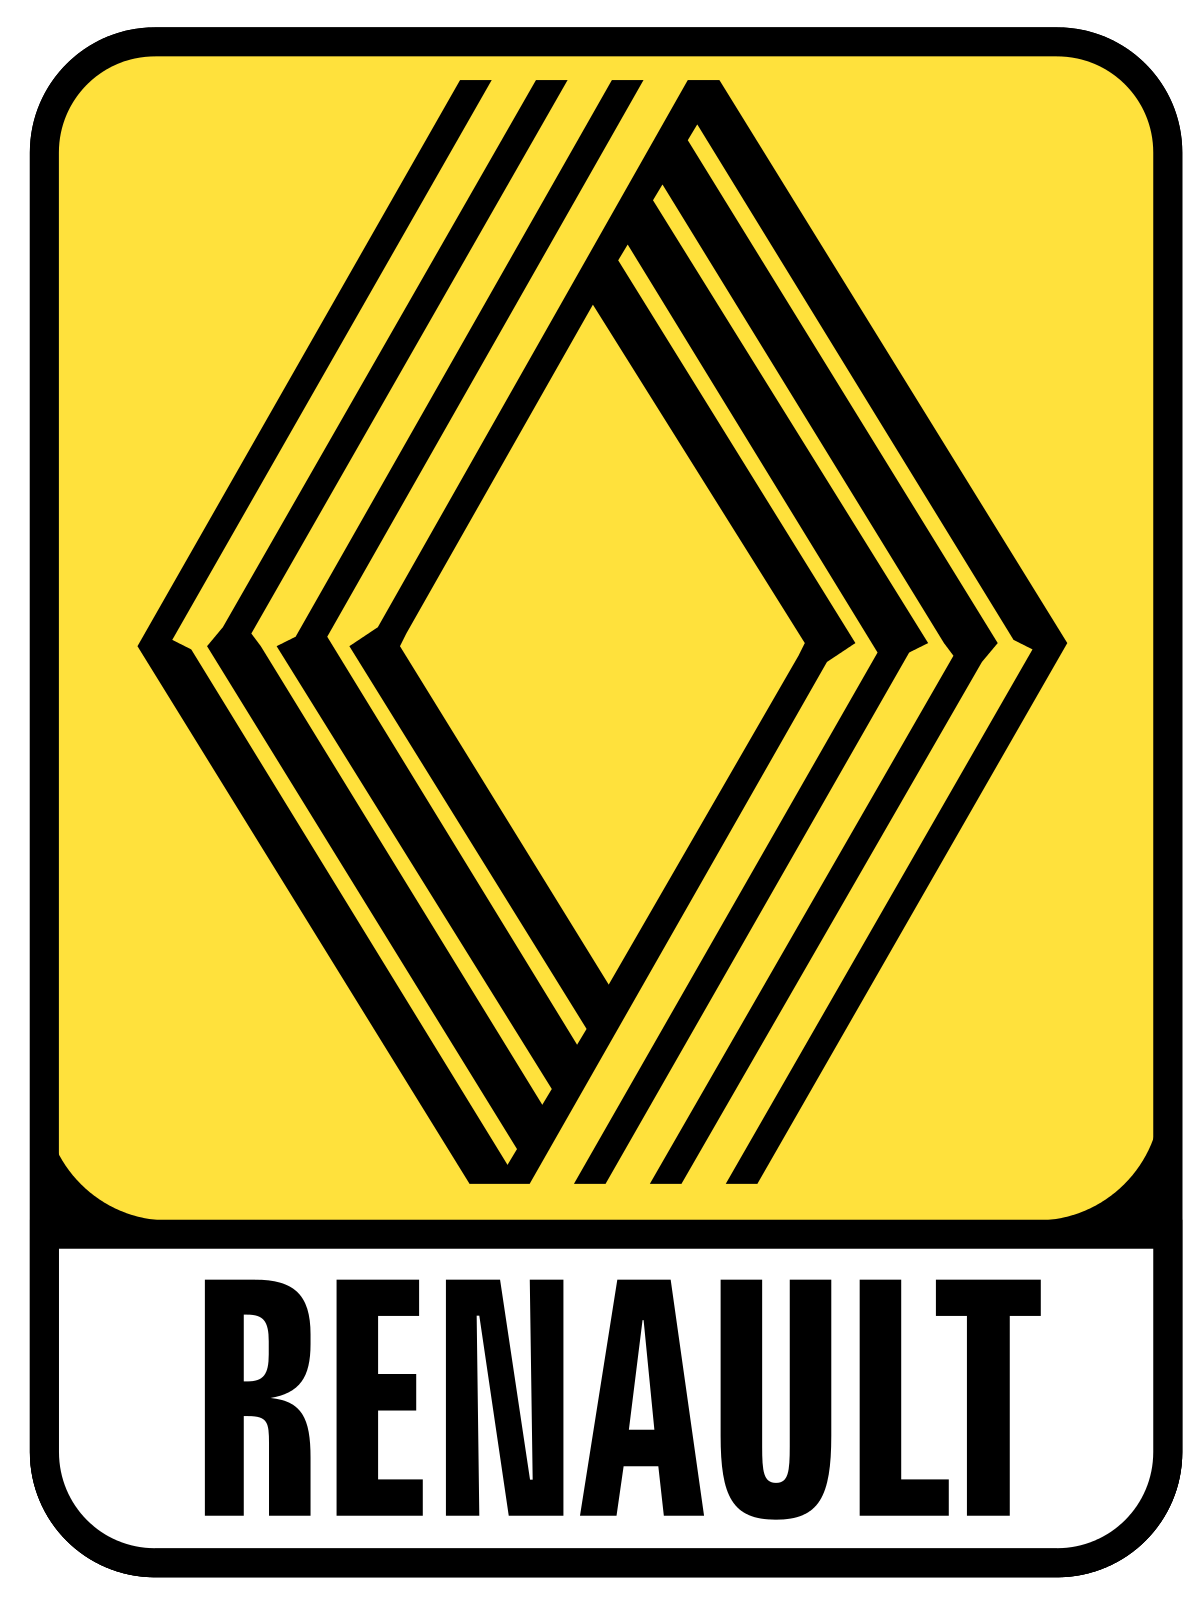 Sigle Renault des années 1970